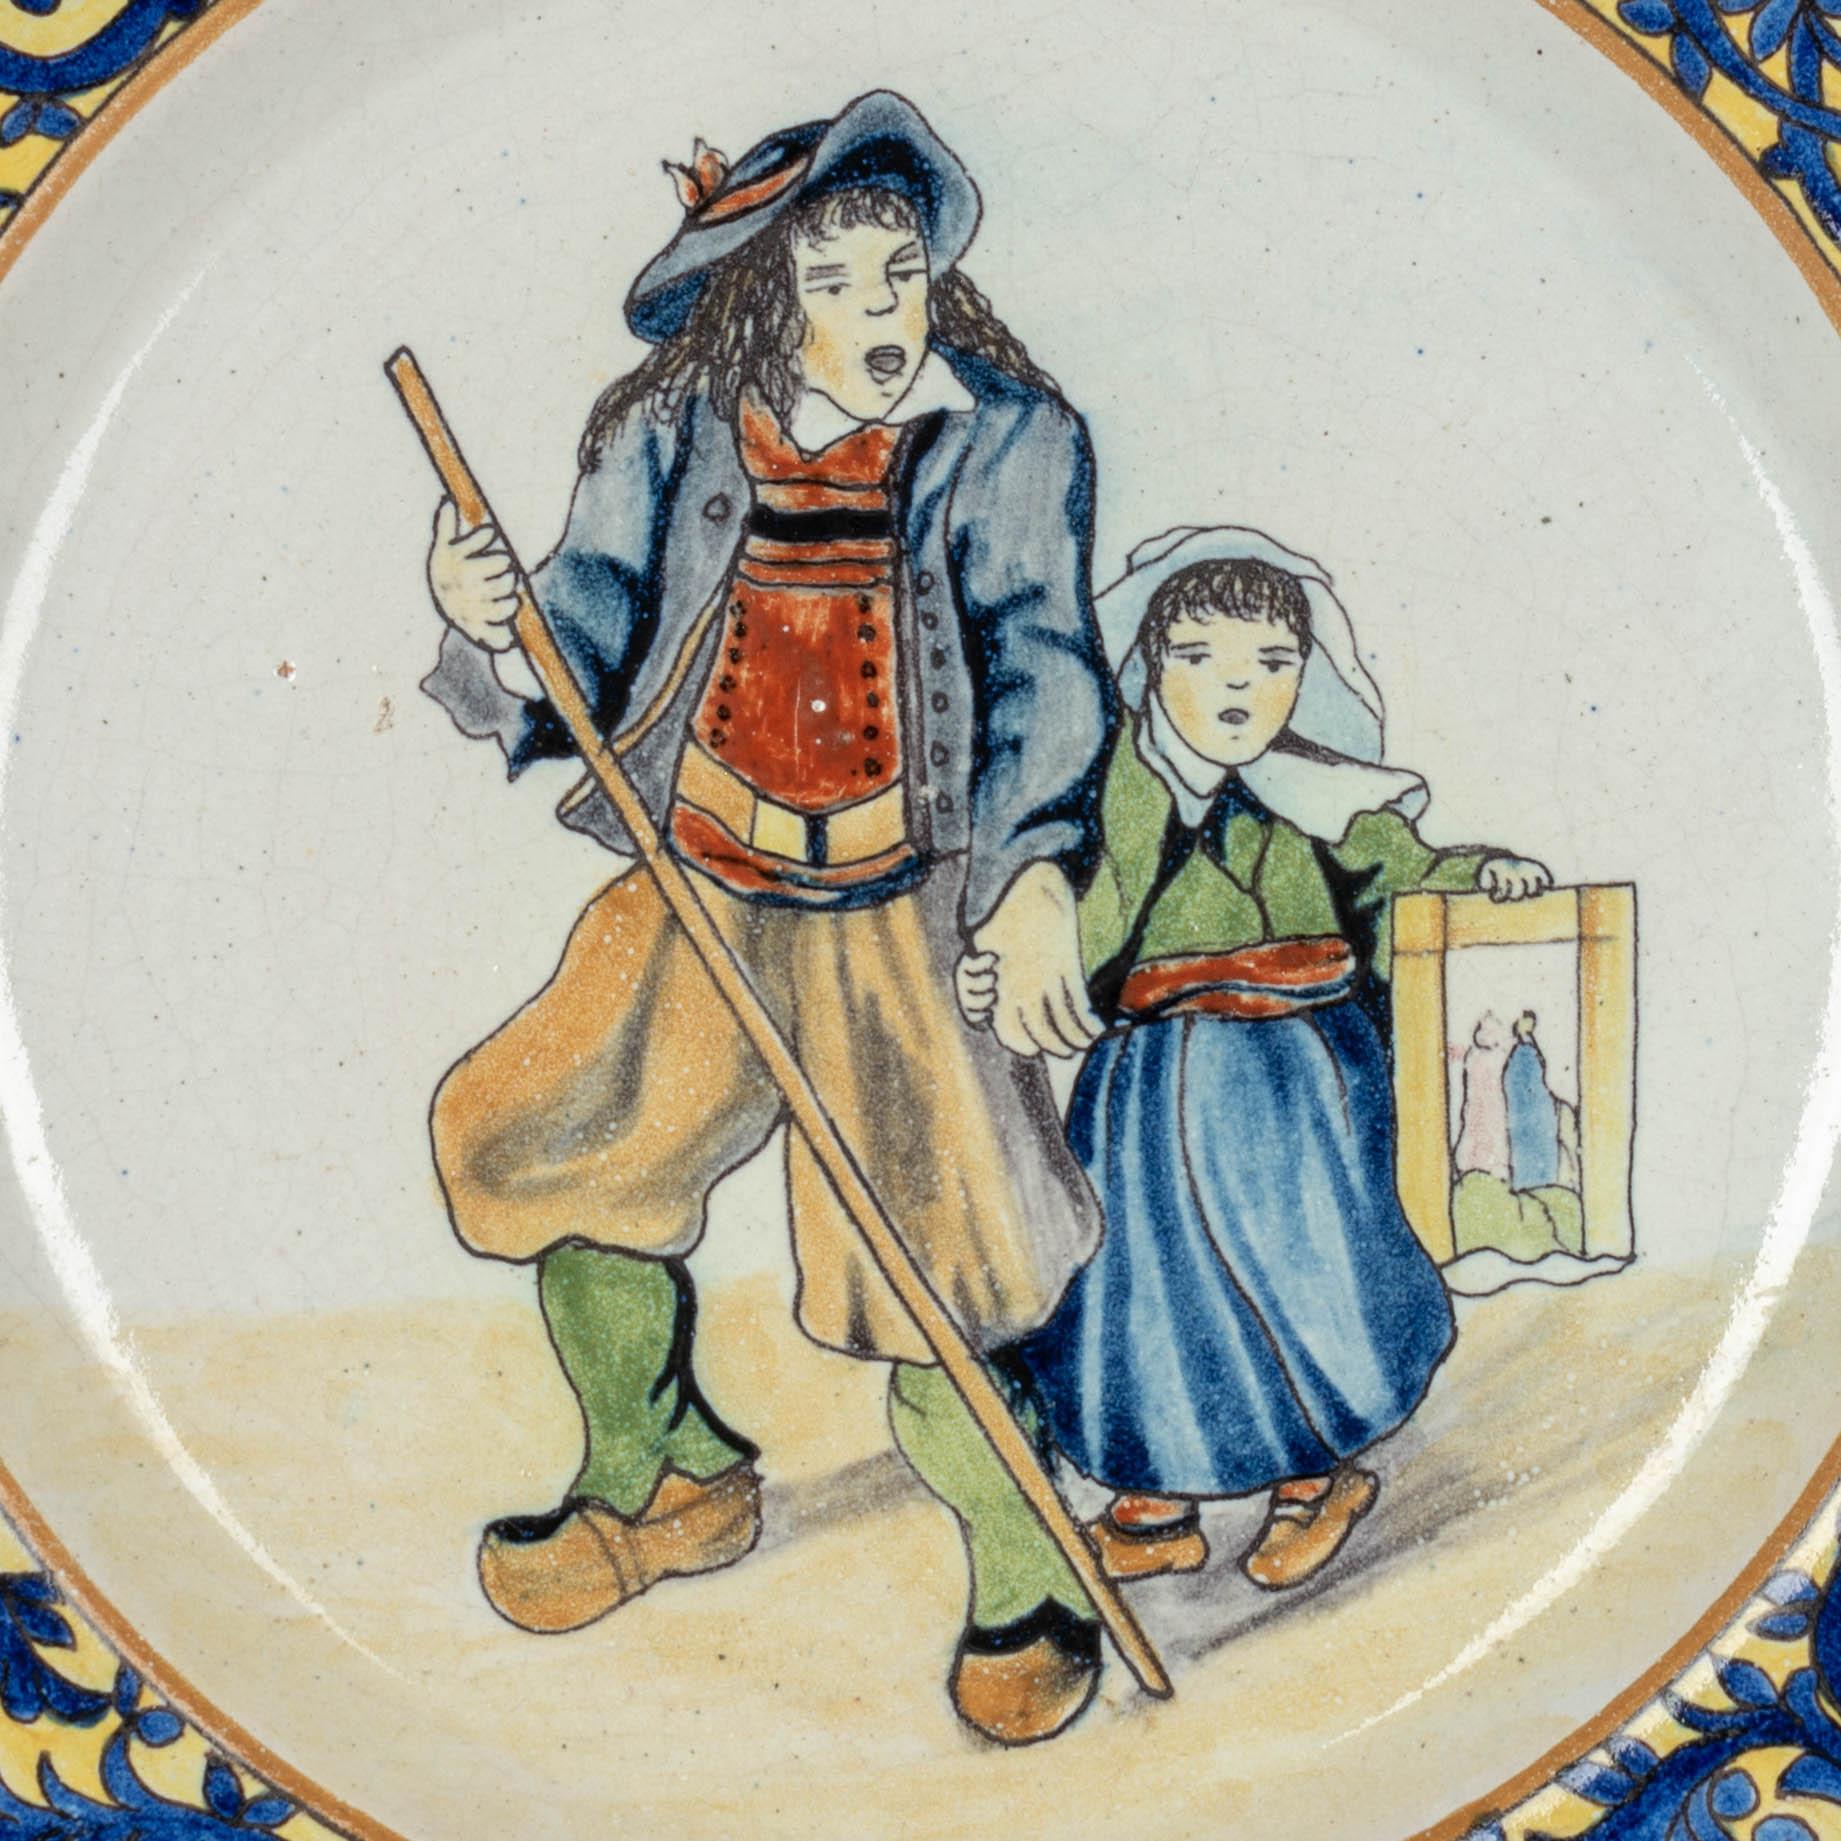 Französische Fayence-Tafel aus dem späten 19. Jahrhundert aus Malicorne, handbemalt mit einem bretonischen Mann und einem Kind in Tracht sowie einer blau-gelben Zierbordüre am Rand. Gute Qualität, dicker Teller. In sehr gutem Zustand mit nur kleinen